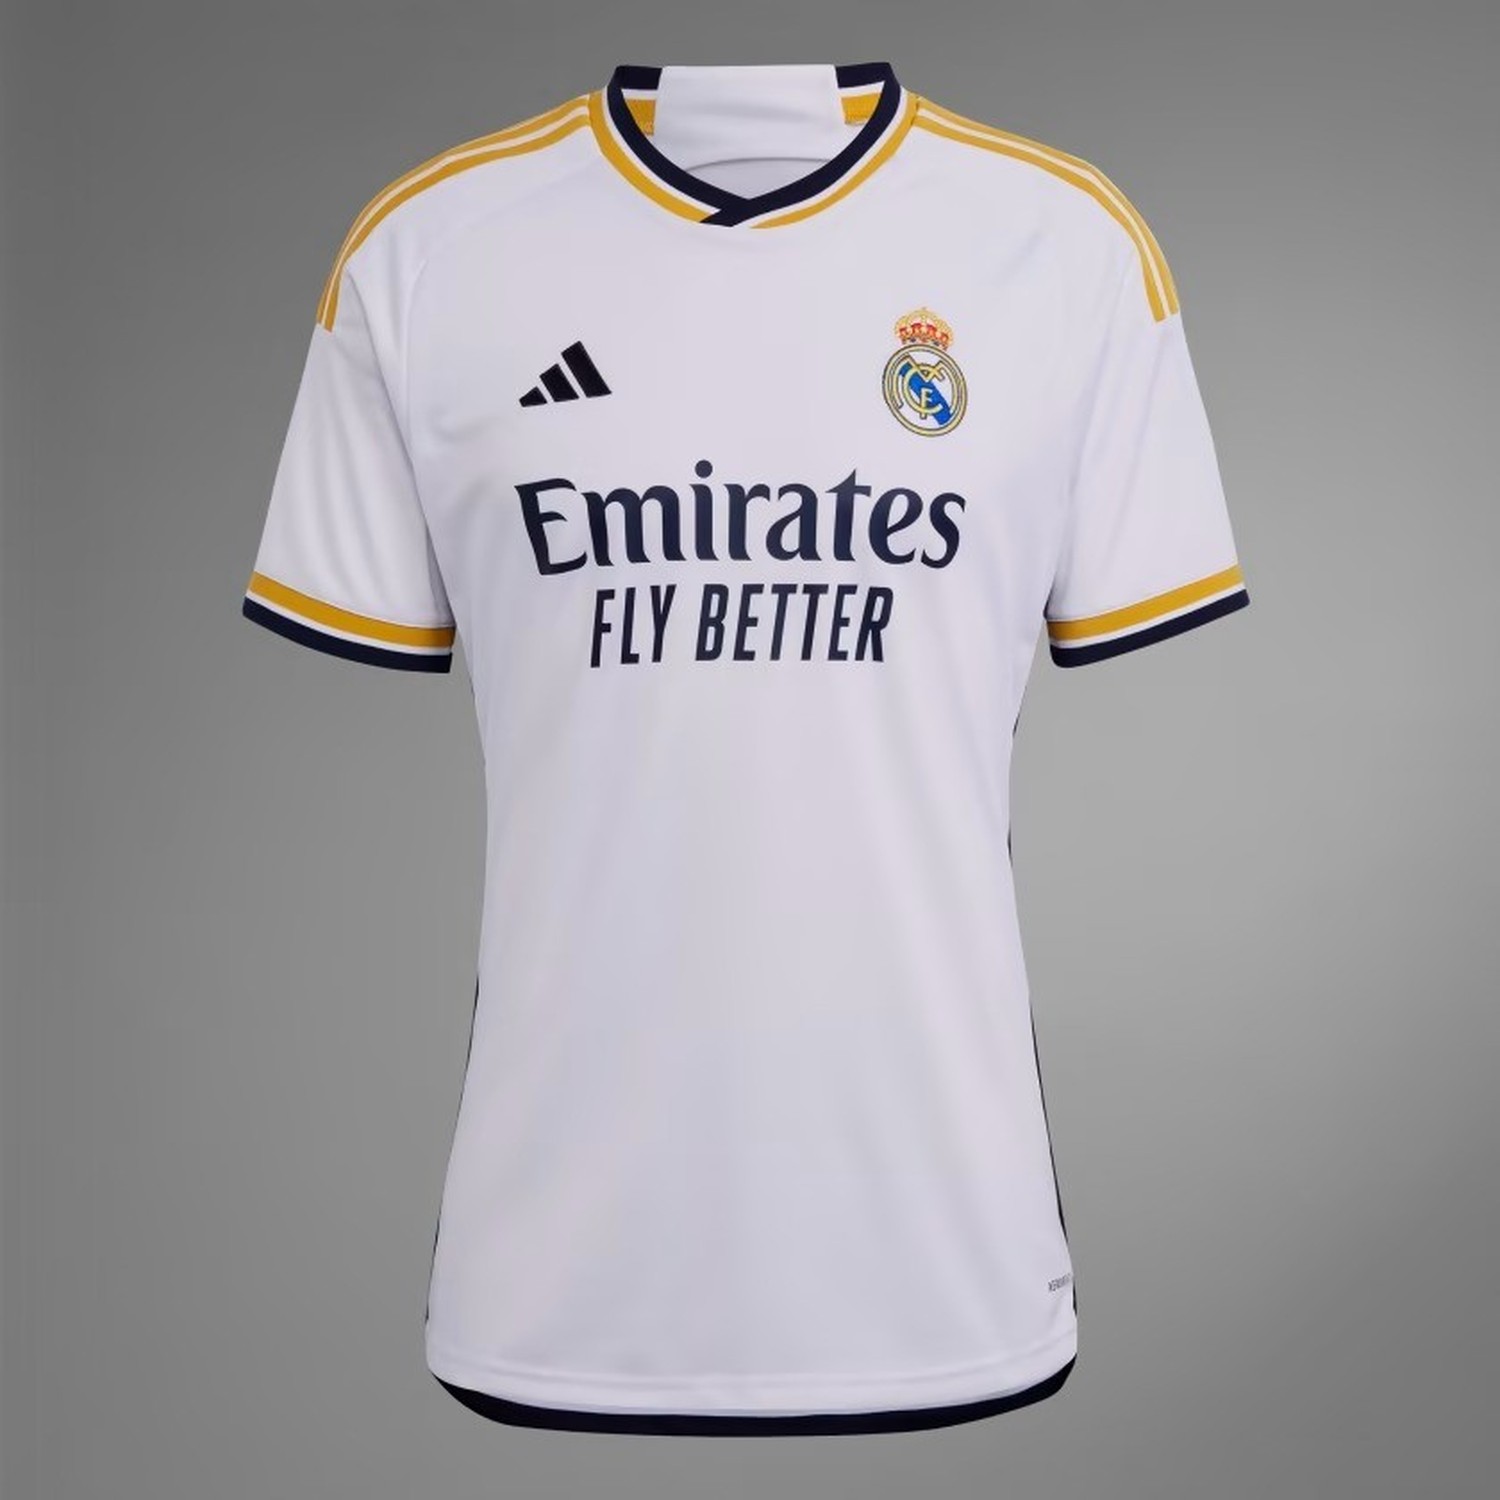 Uniforme del Real Madrid y camiseta oficial